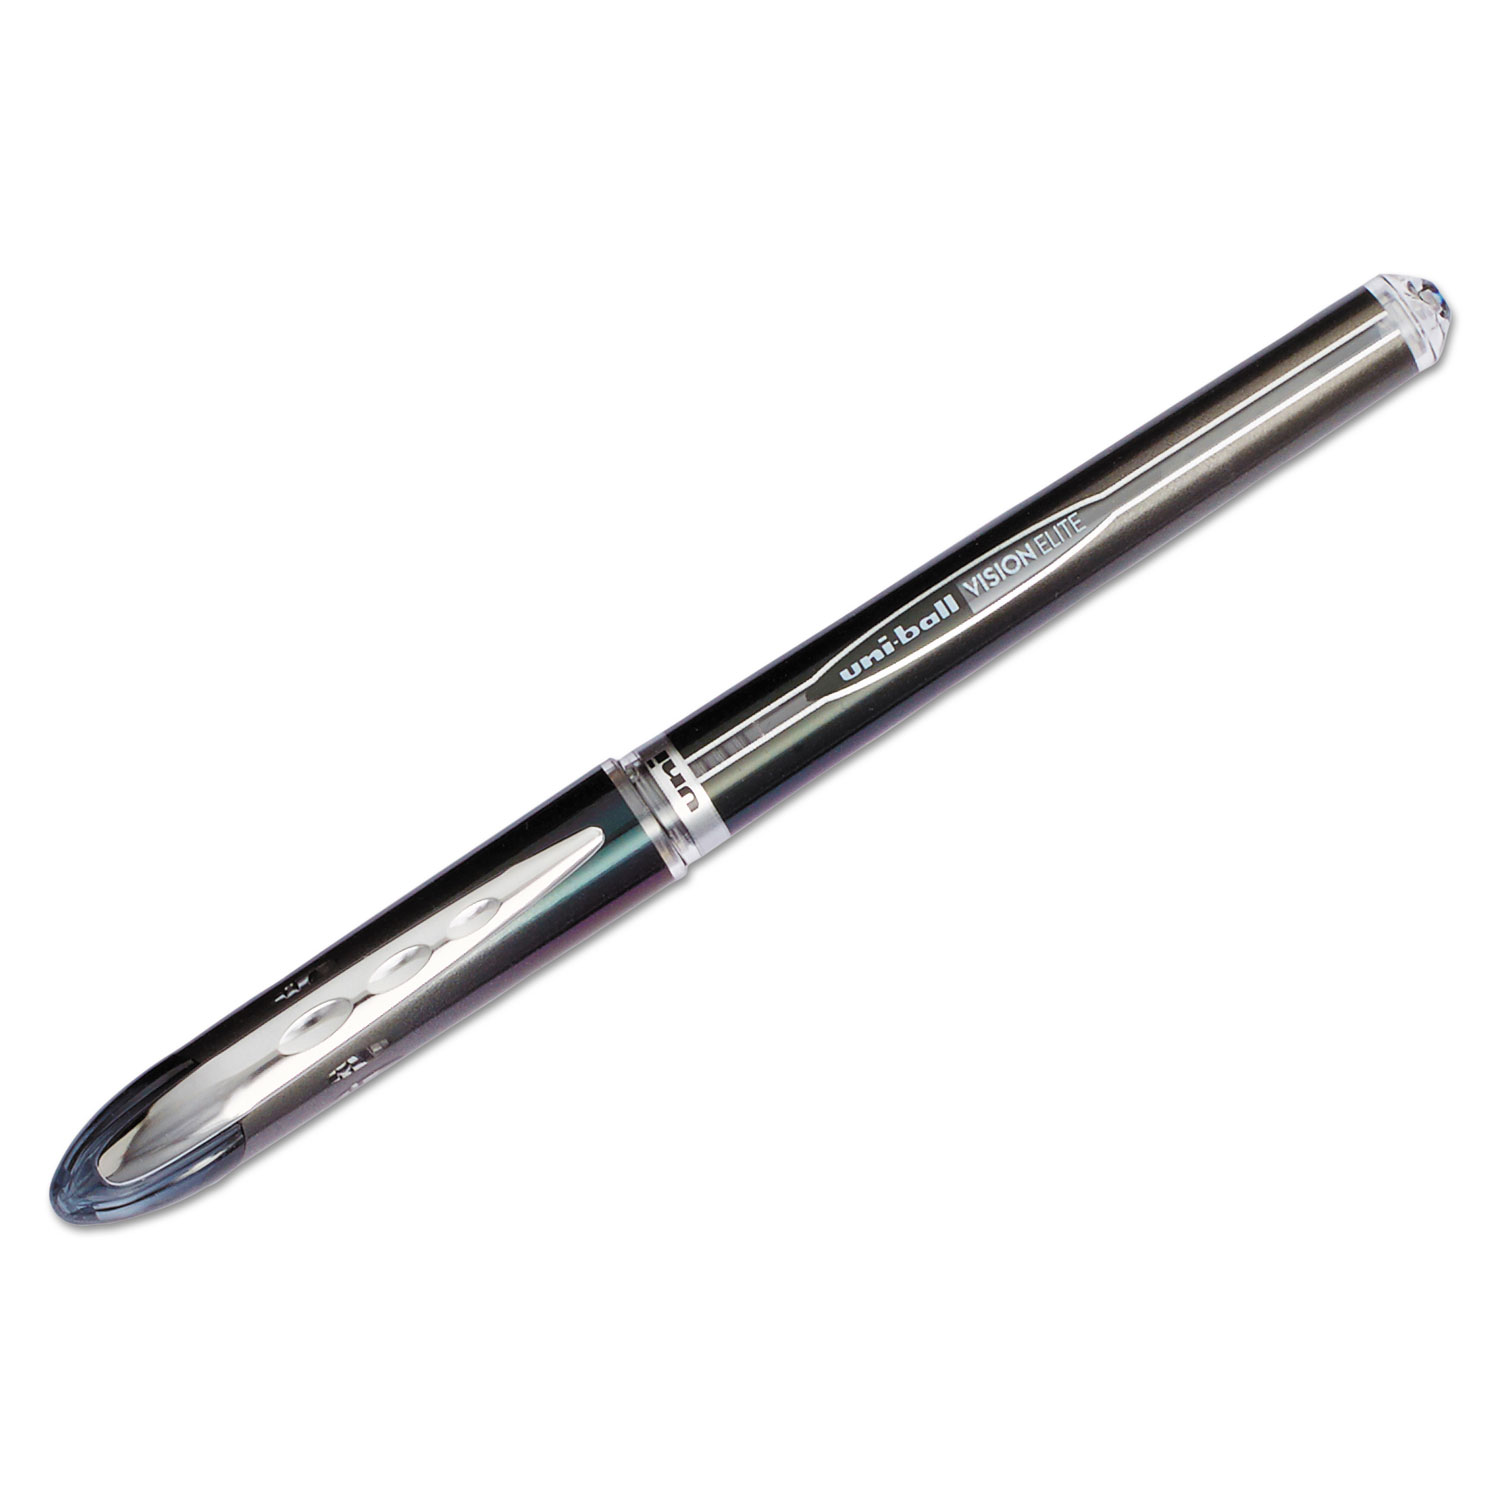  uni-ball 69000 VISION ELITE Stick Roller Ball Pen, Super-Fine 0.5mm, Black Ink, Black Barrel (UBC69000) 